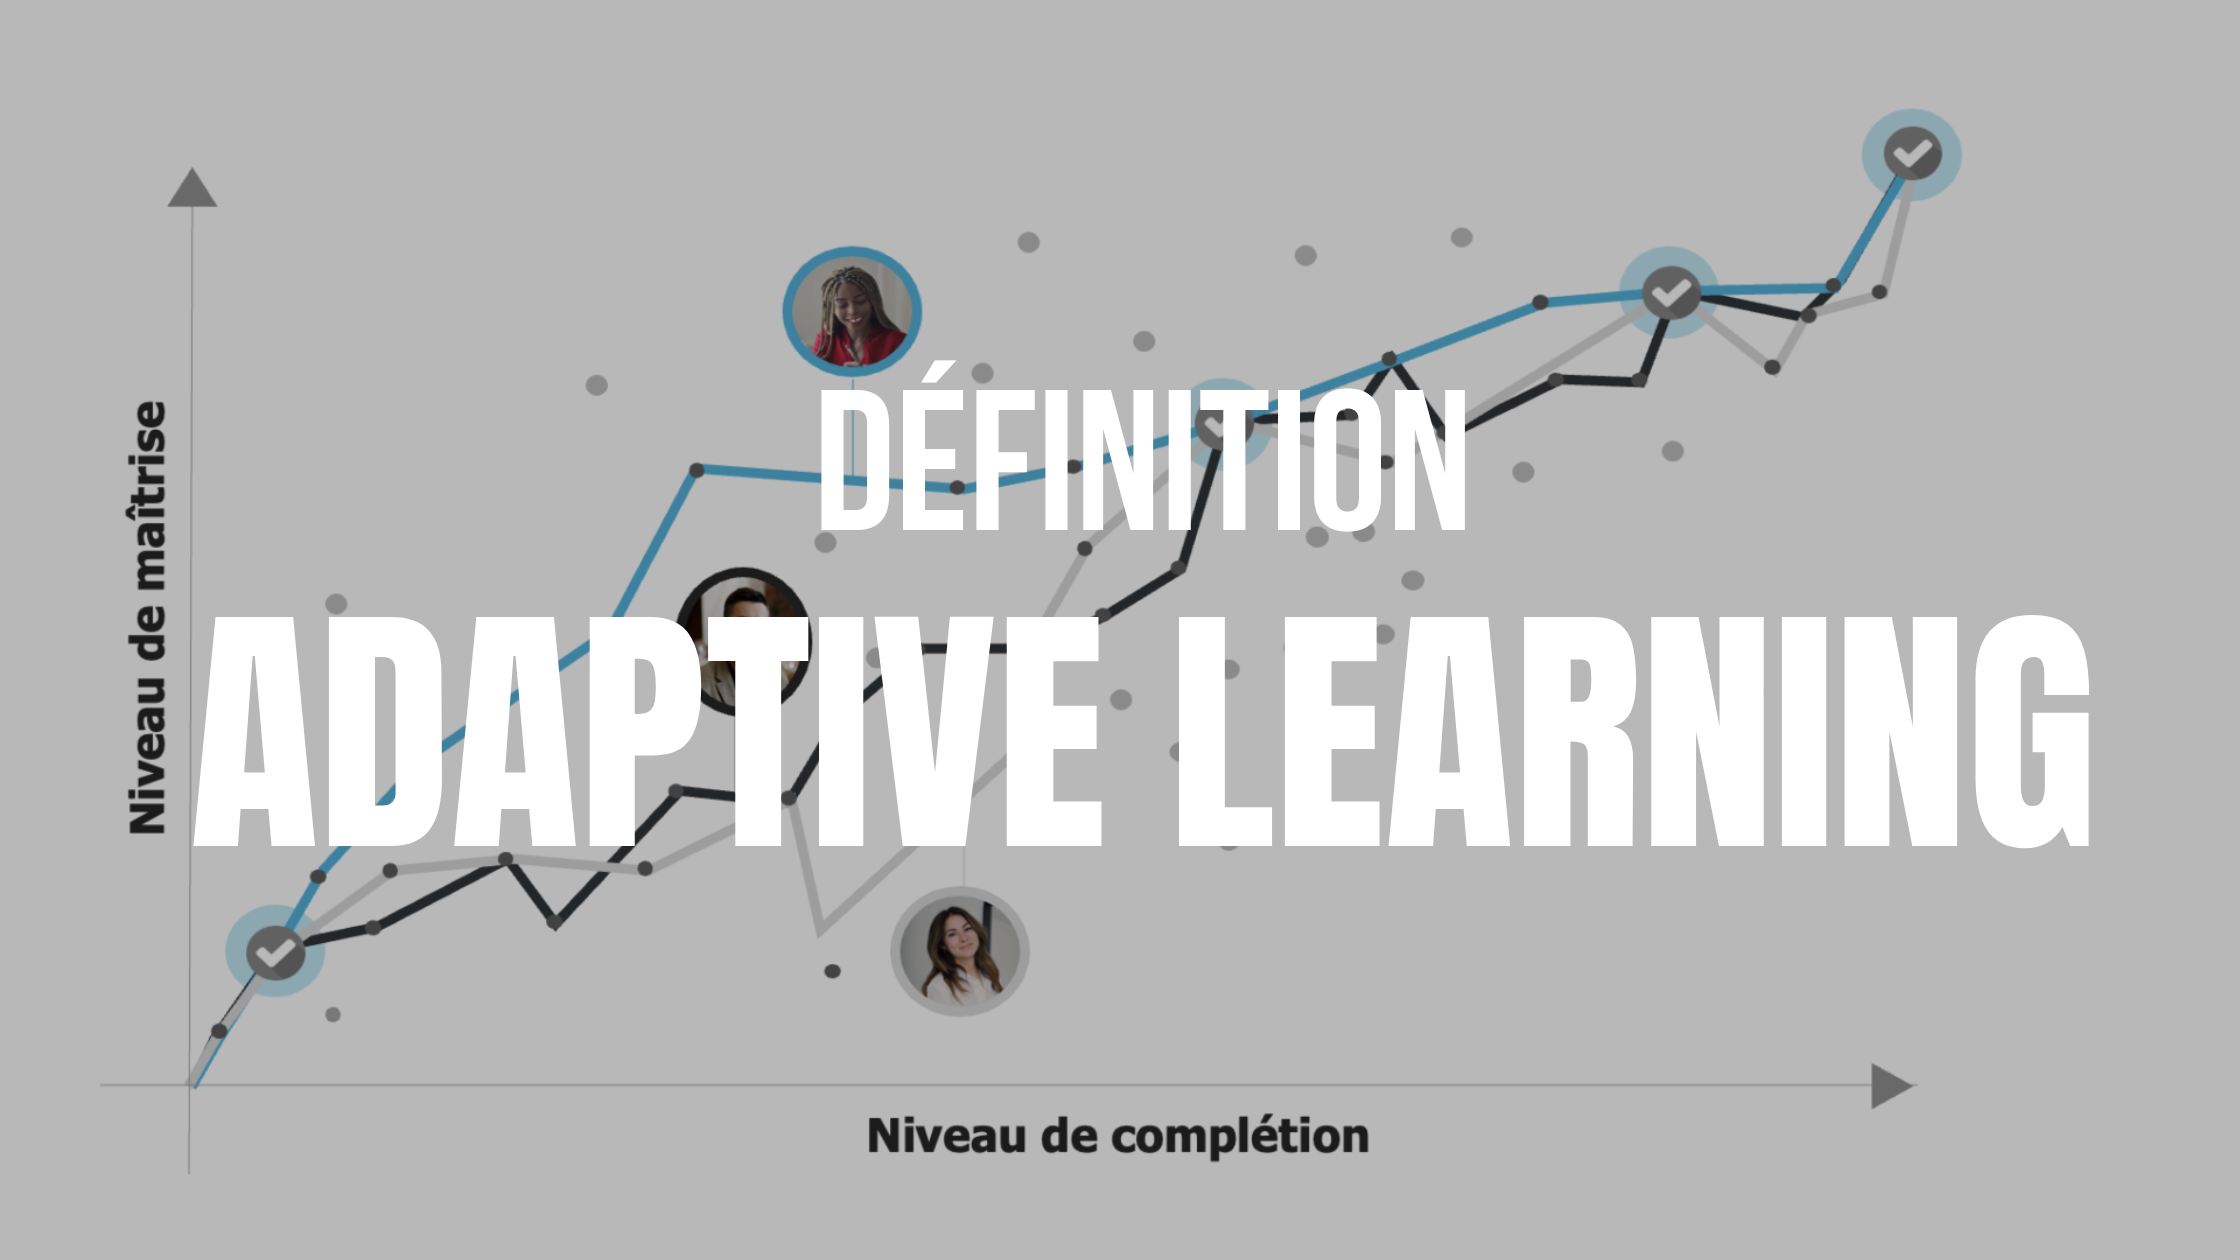 L'Adaptive Learning, qu'est-ce que c'est ?